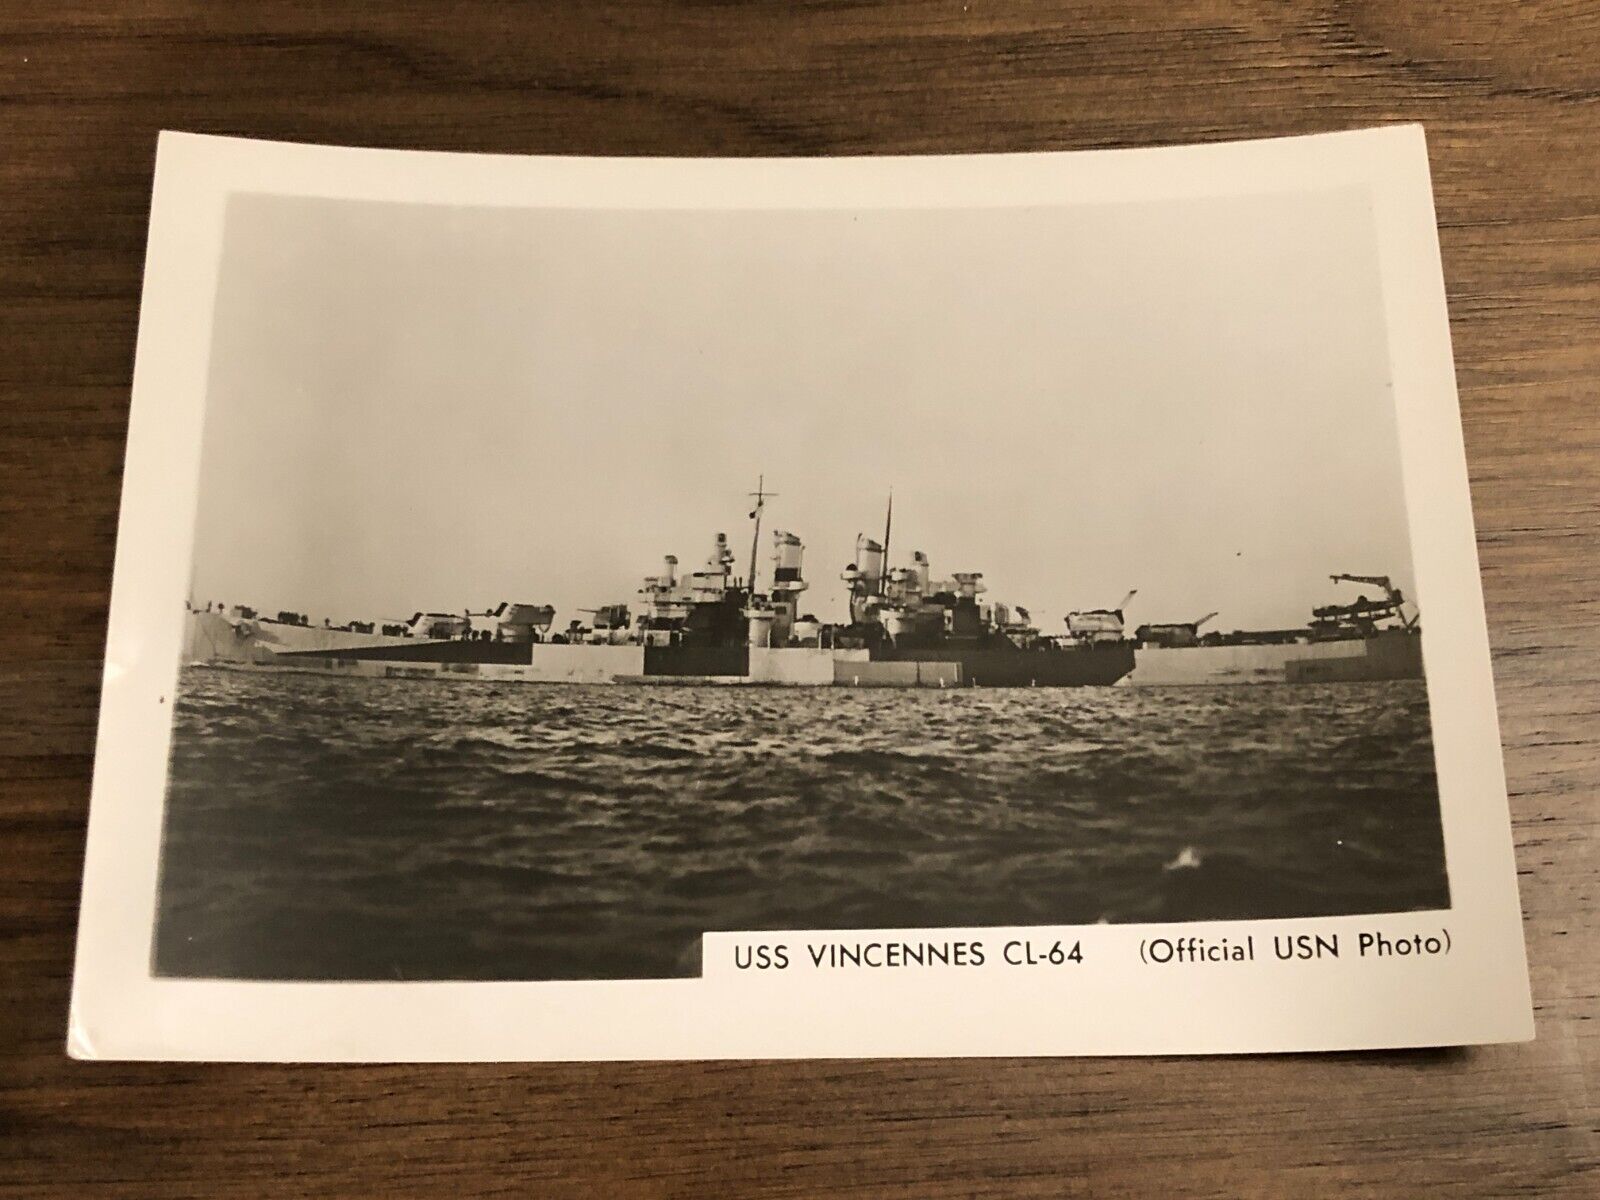 Vintage Official USN Photo - USS VINCENNES CL-64